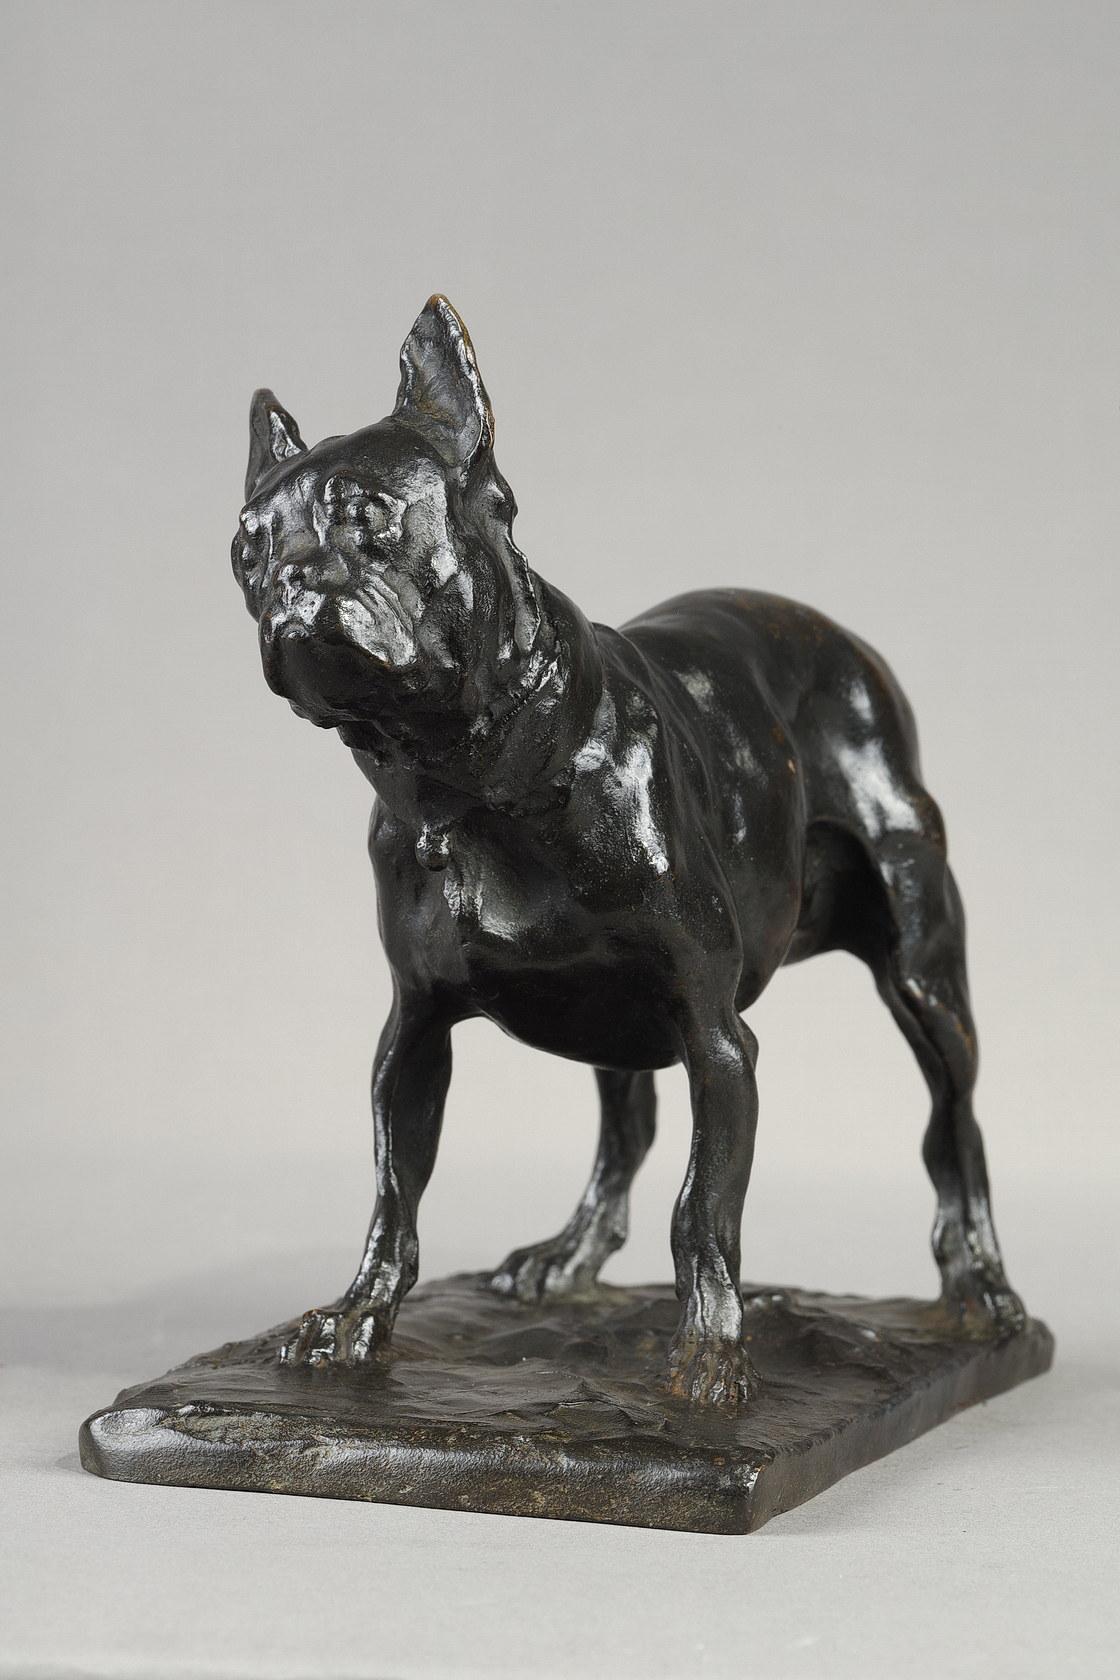 Rembrandt BUGATTI (1884-1916)
Französische Bulldogge
auch bekannt als Der Hund von Teresa Lorioli (Mutter des Künstlers)
Kleine Größe

Skulptur aus Bronze mit nuancierter schwarzer Patina.
Signiert auf dem Sockel 